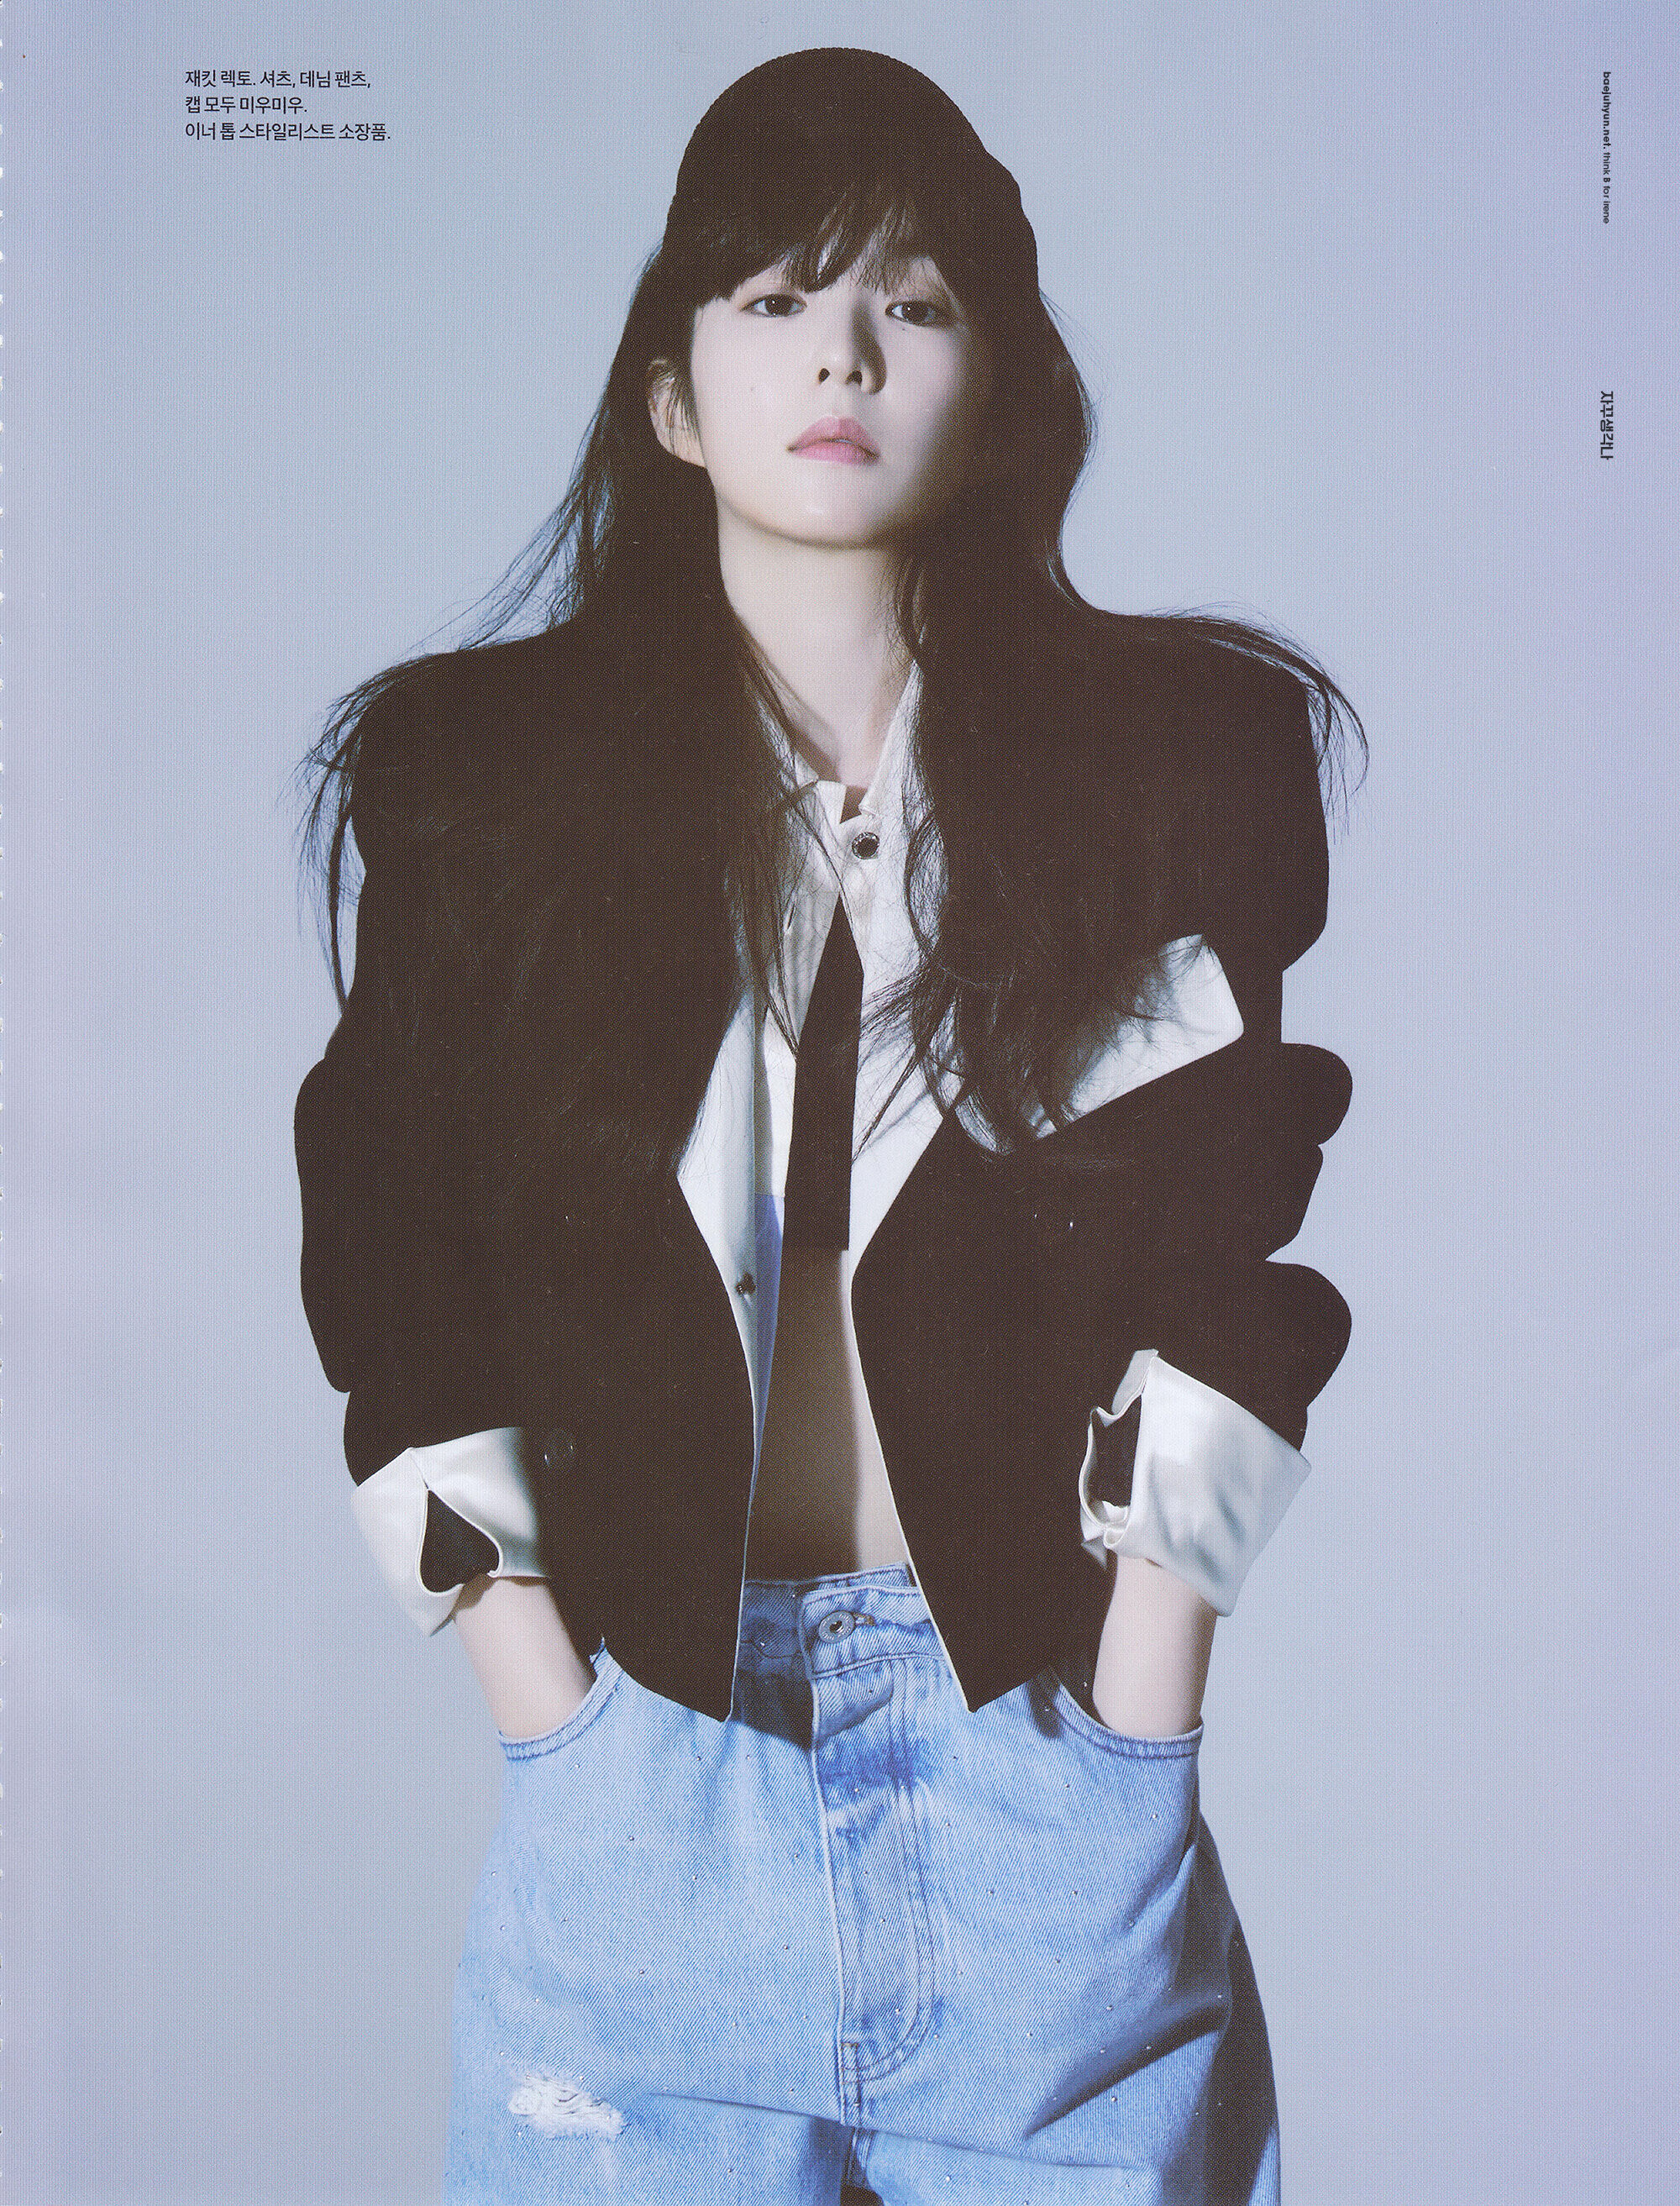 Red Velvet Irene for Esquire Magazine January 2022 Issue (Scans) | Kpopping